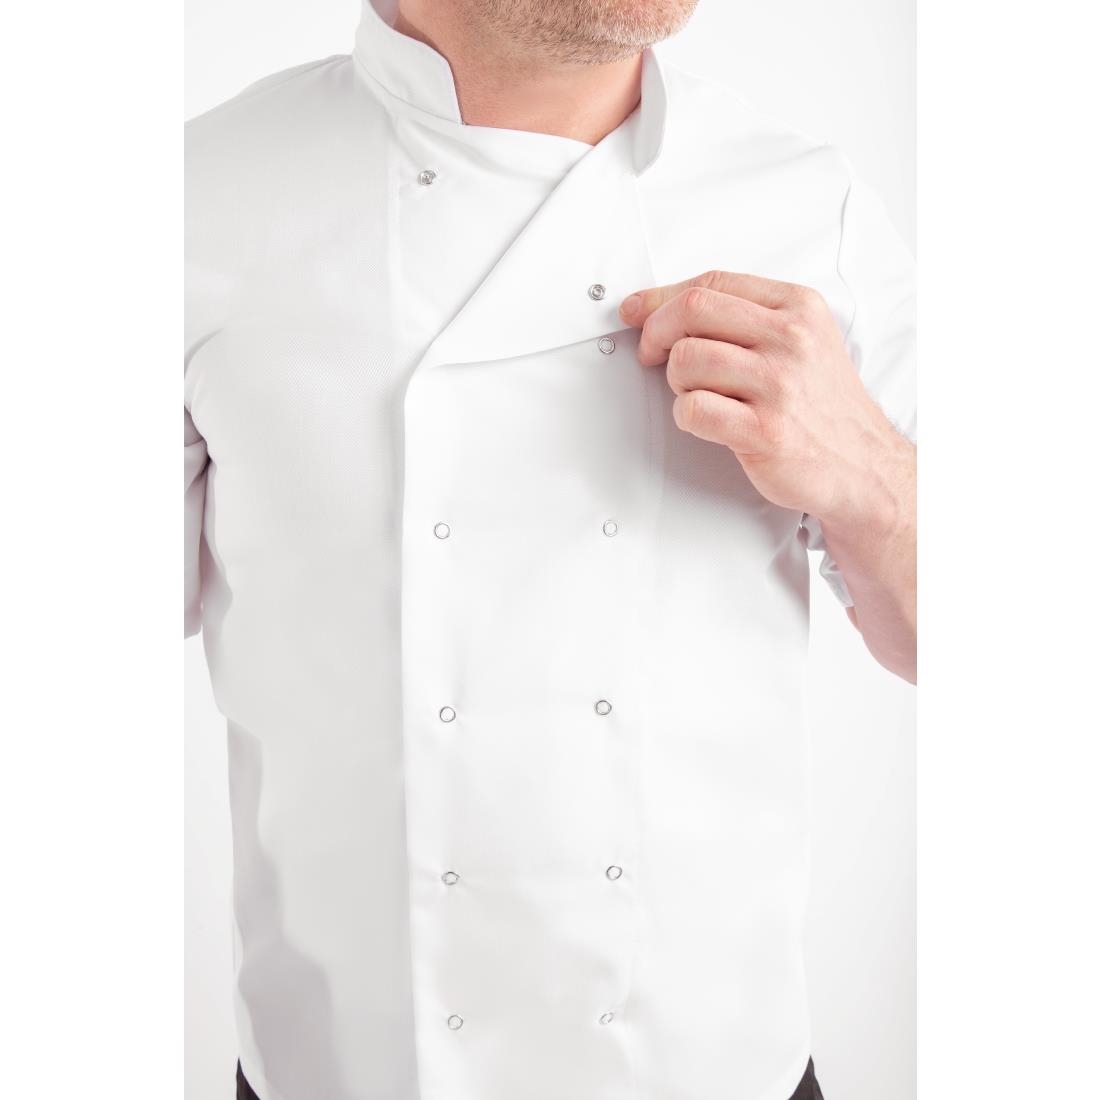 Whites Vegas Unisex White Short Sleeve Chef Jacket